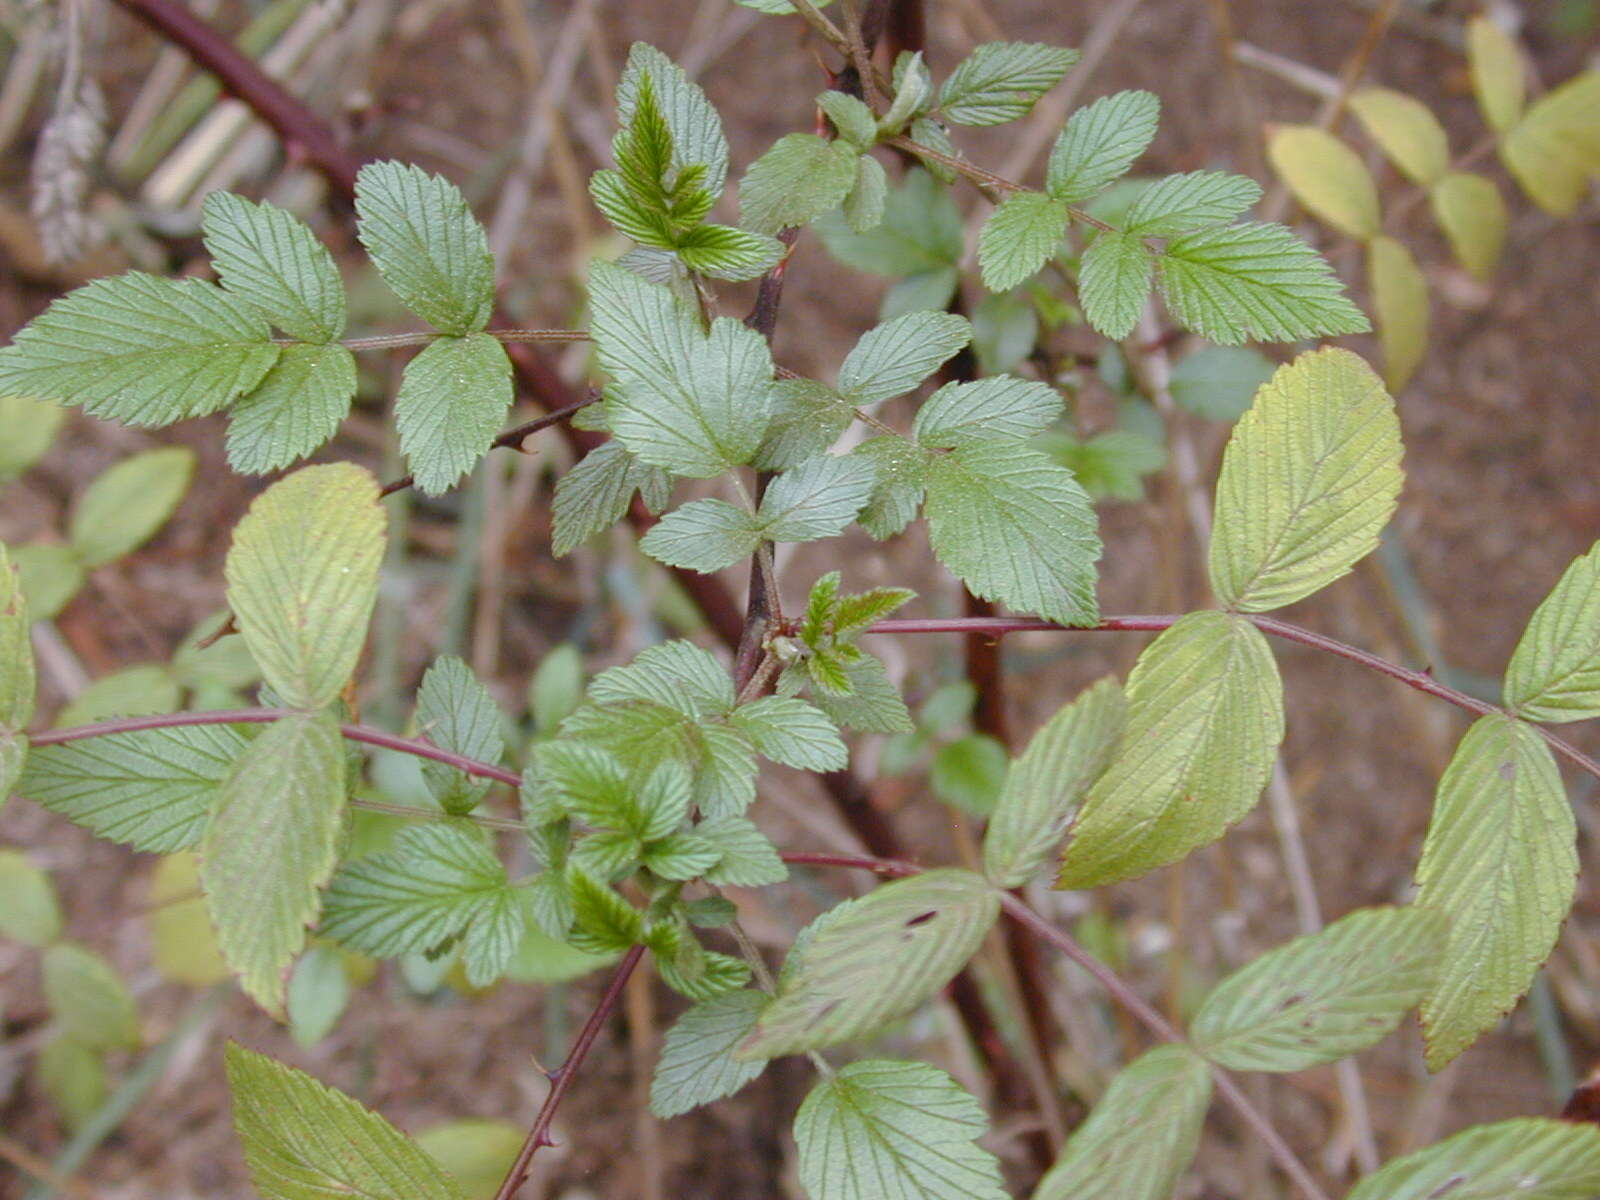 Image of Mysore raspberry